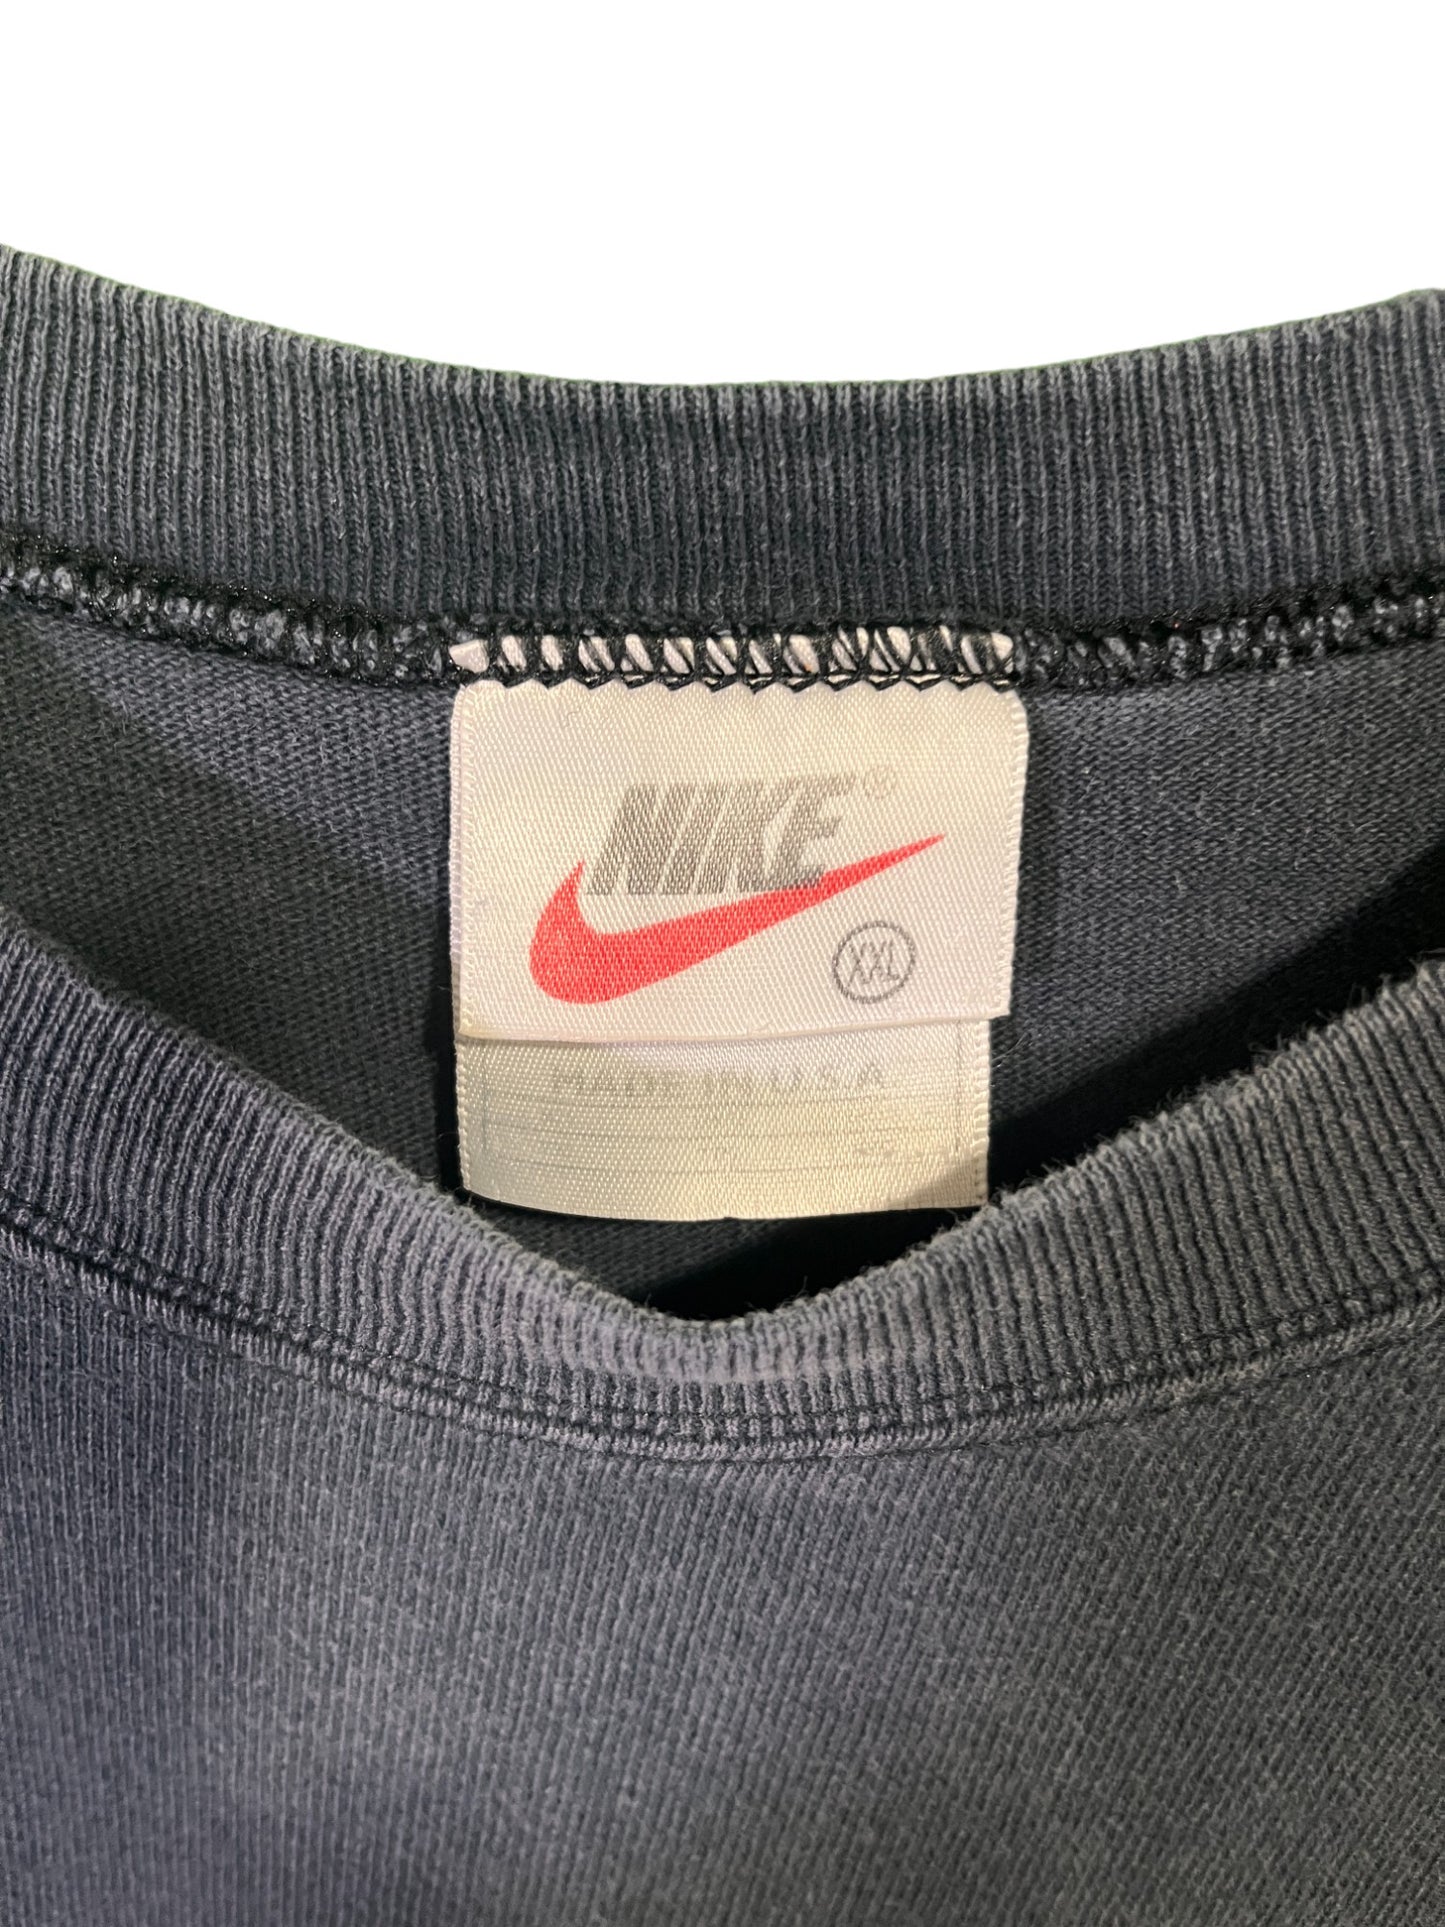 Vintage 90's Nike Small Swoosh Cutoff Black Tee Size XXL